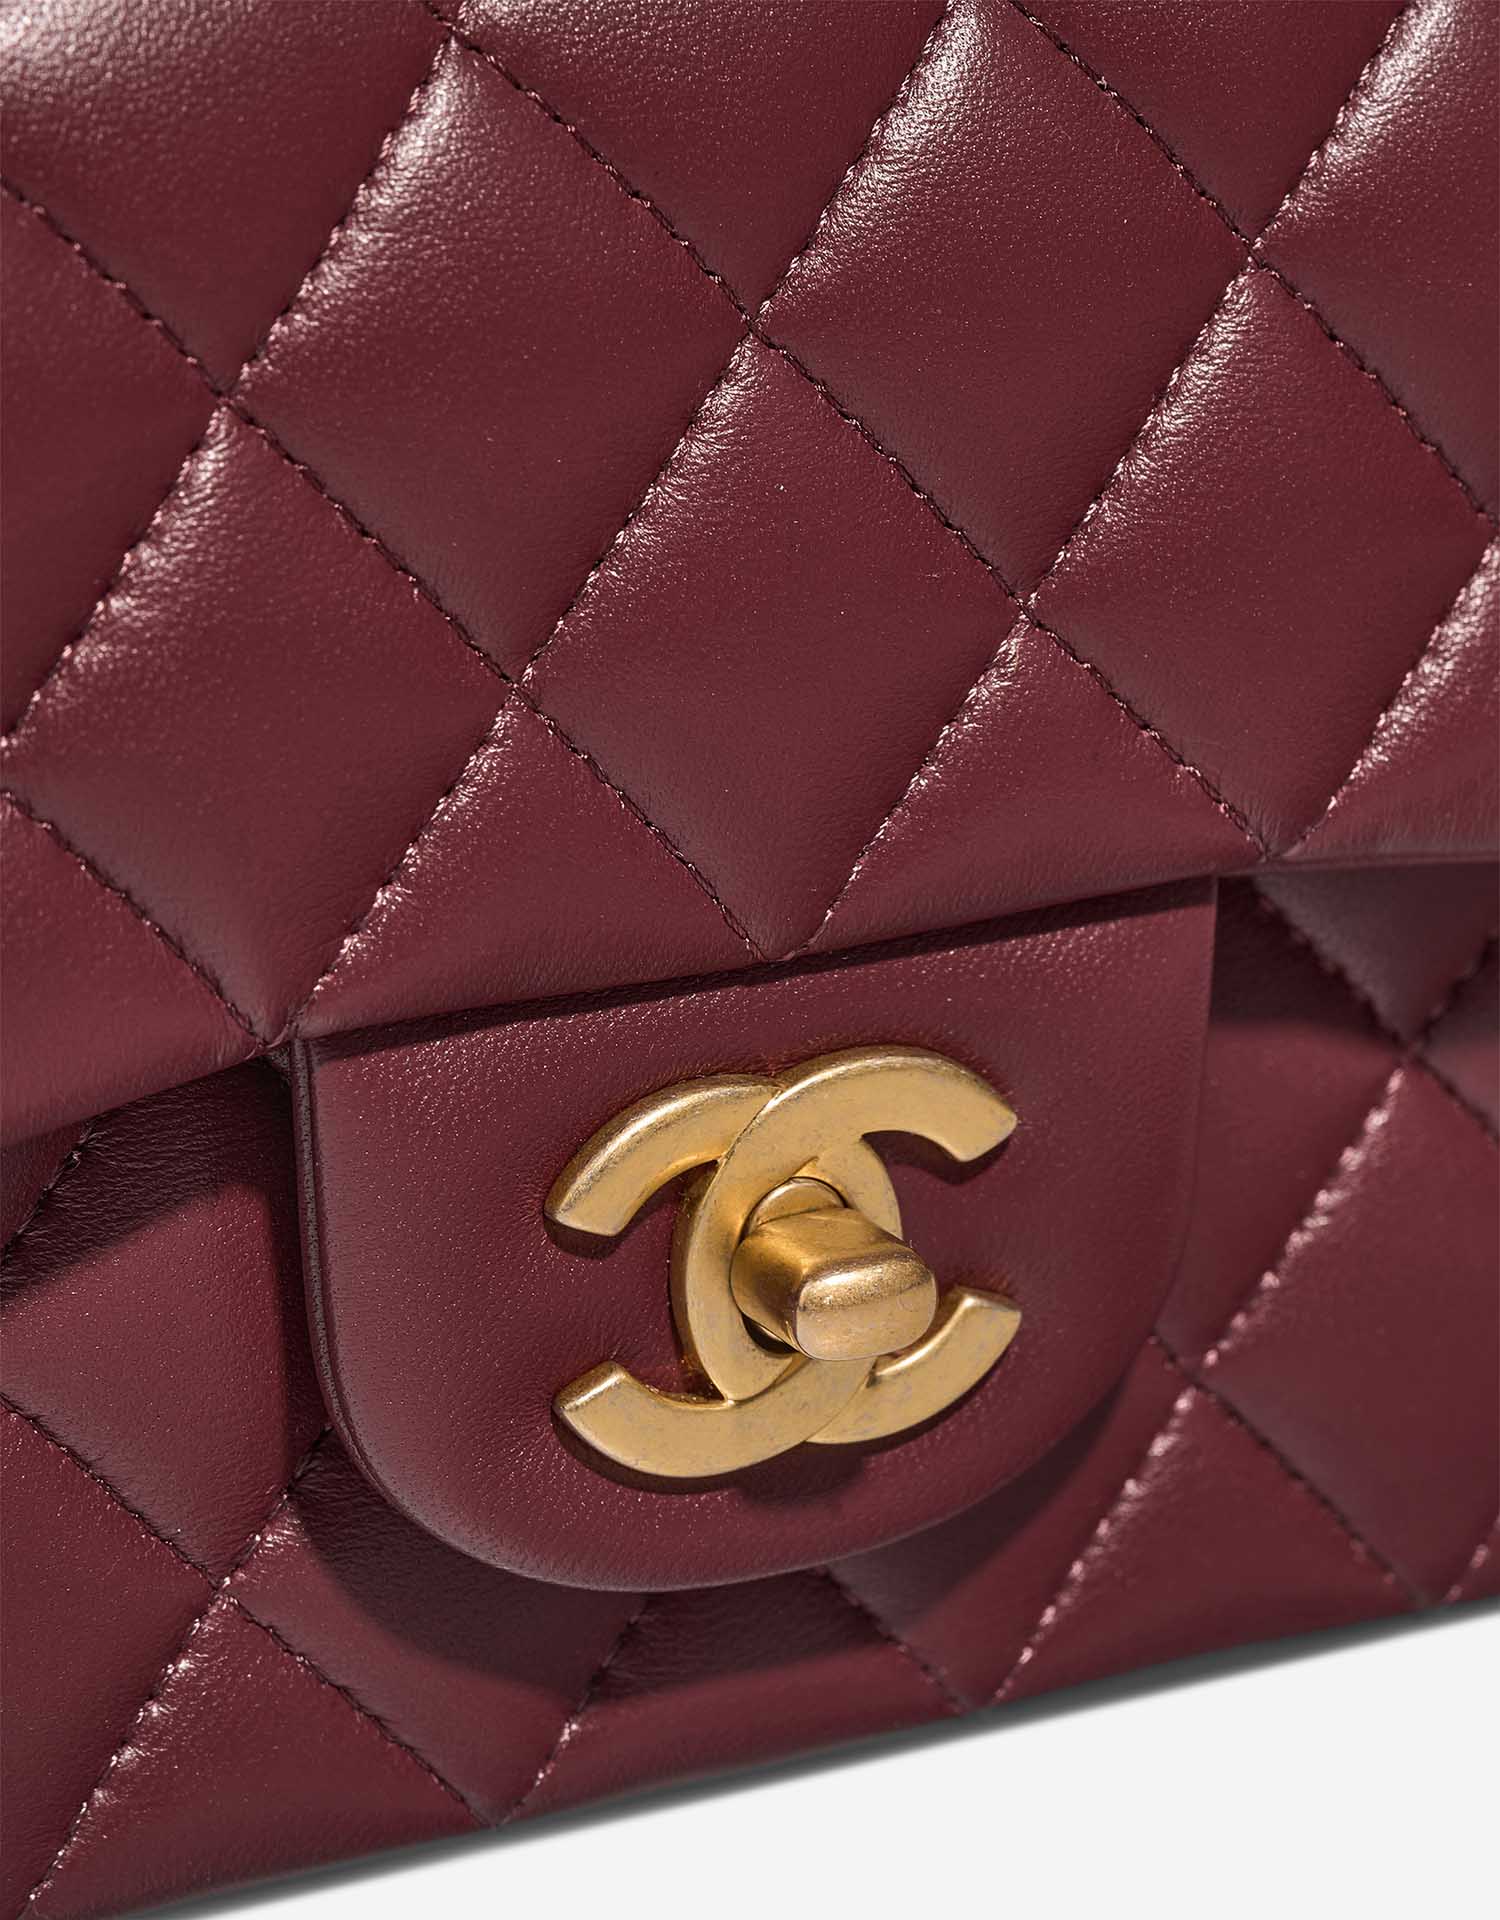 Chanel Timeless MiniRectangular DarkRed Verschluss-System | Verkaufen Sie Ihre Designer-Tasche auf Saclab.com